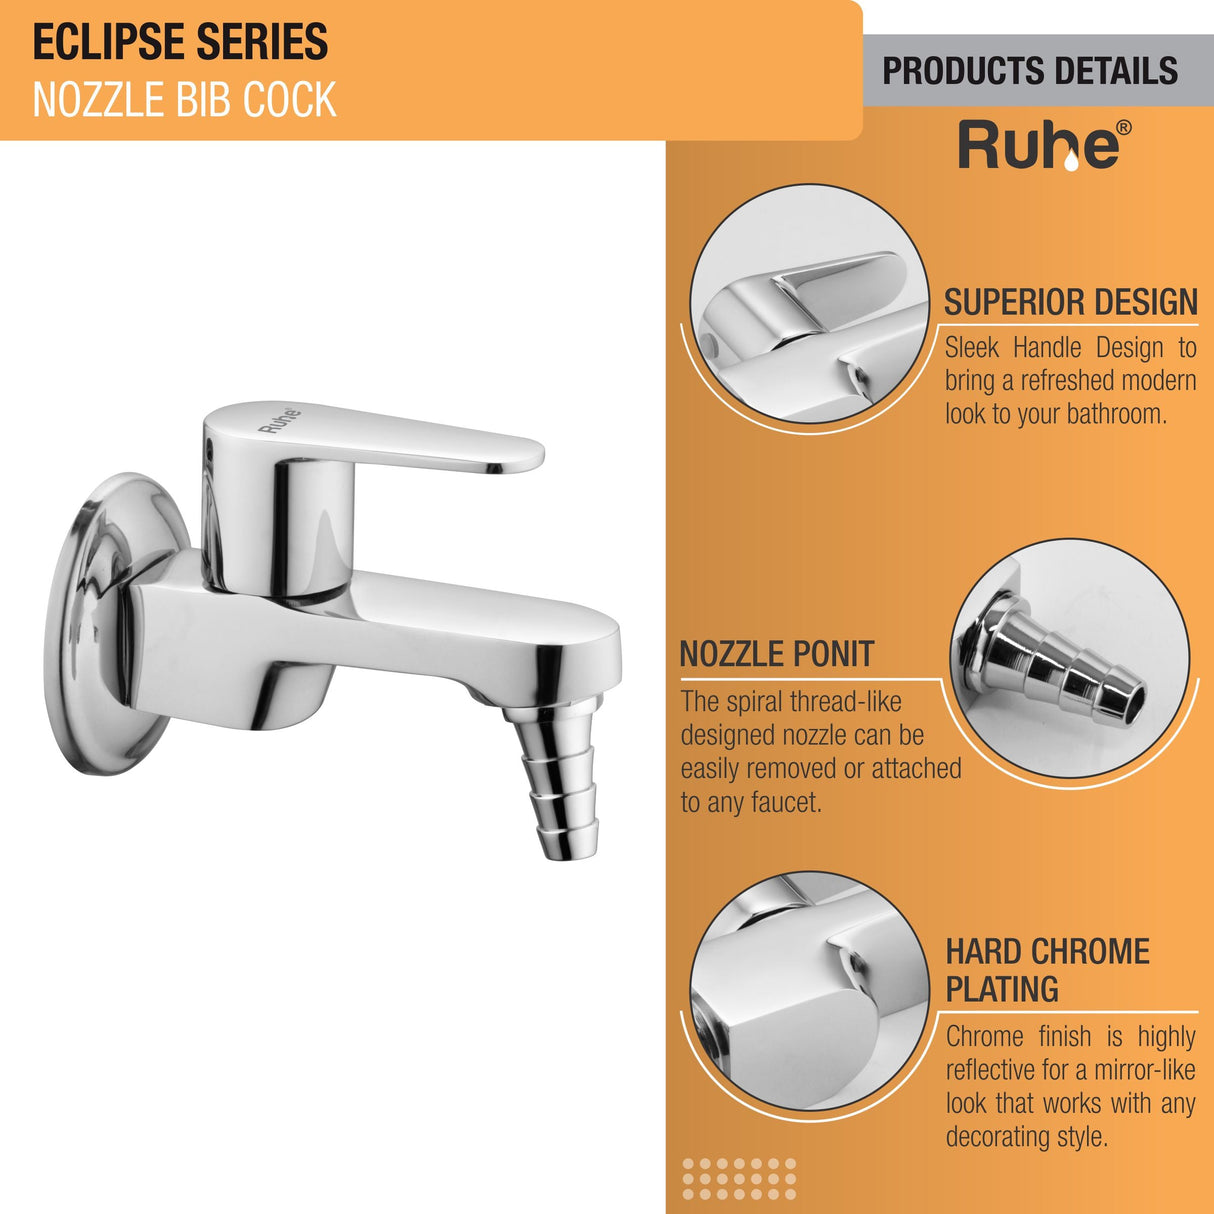 Eclipse Nozzle Bib Tap Brass Faucet product details